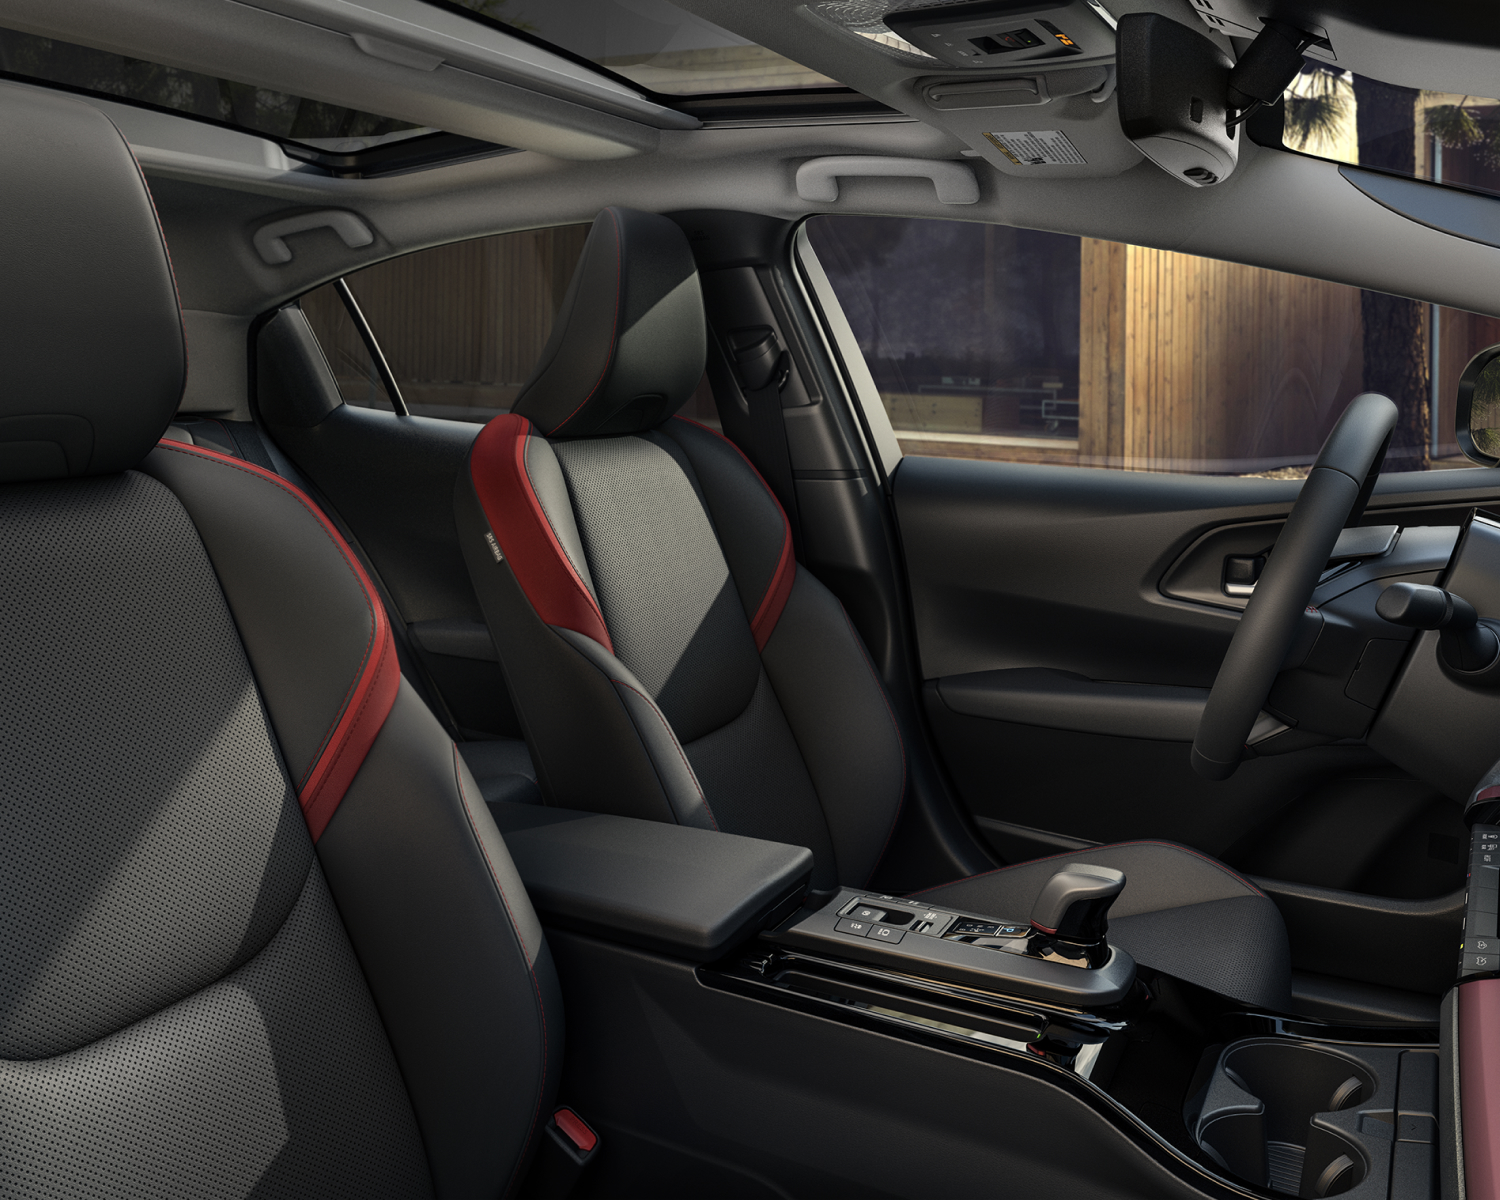 Prius Prime XSE Premium interior shown in Black/Red SofTex®